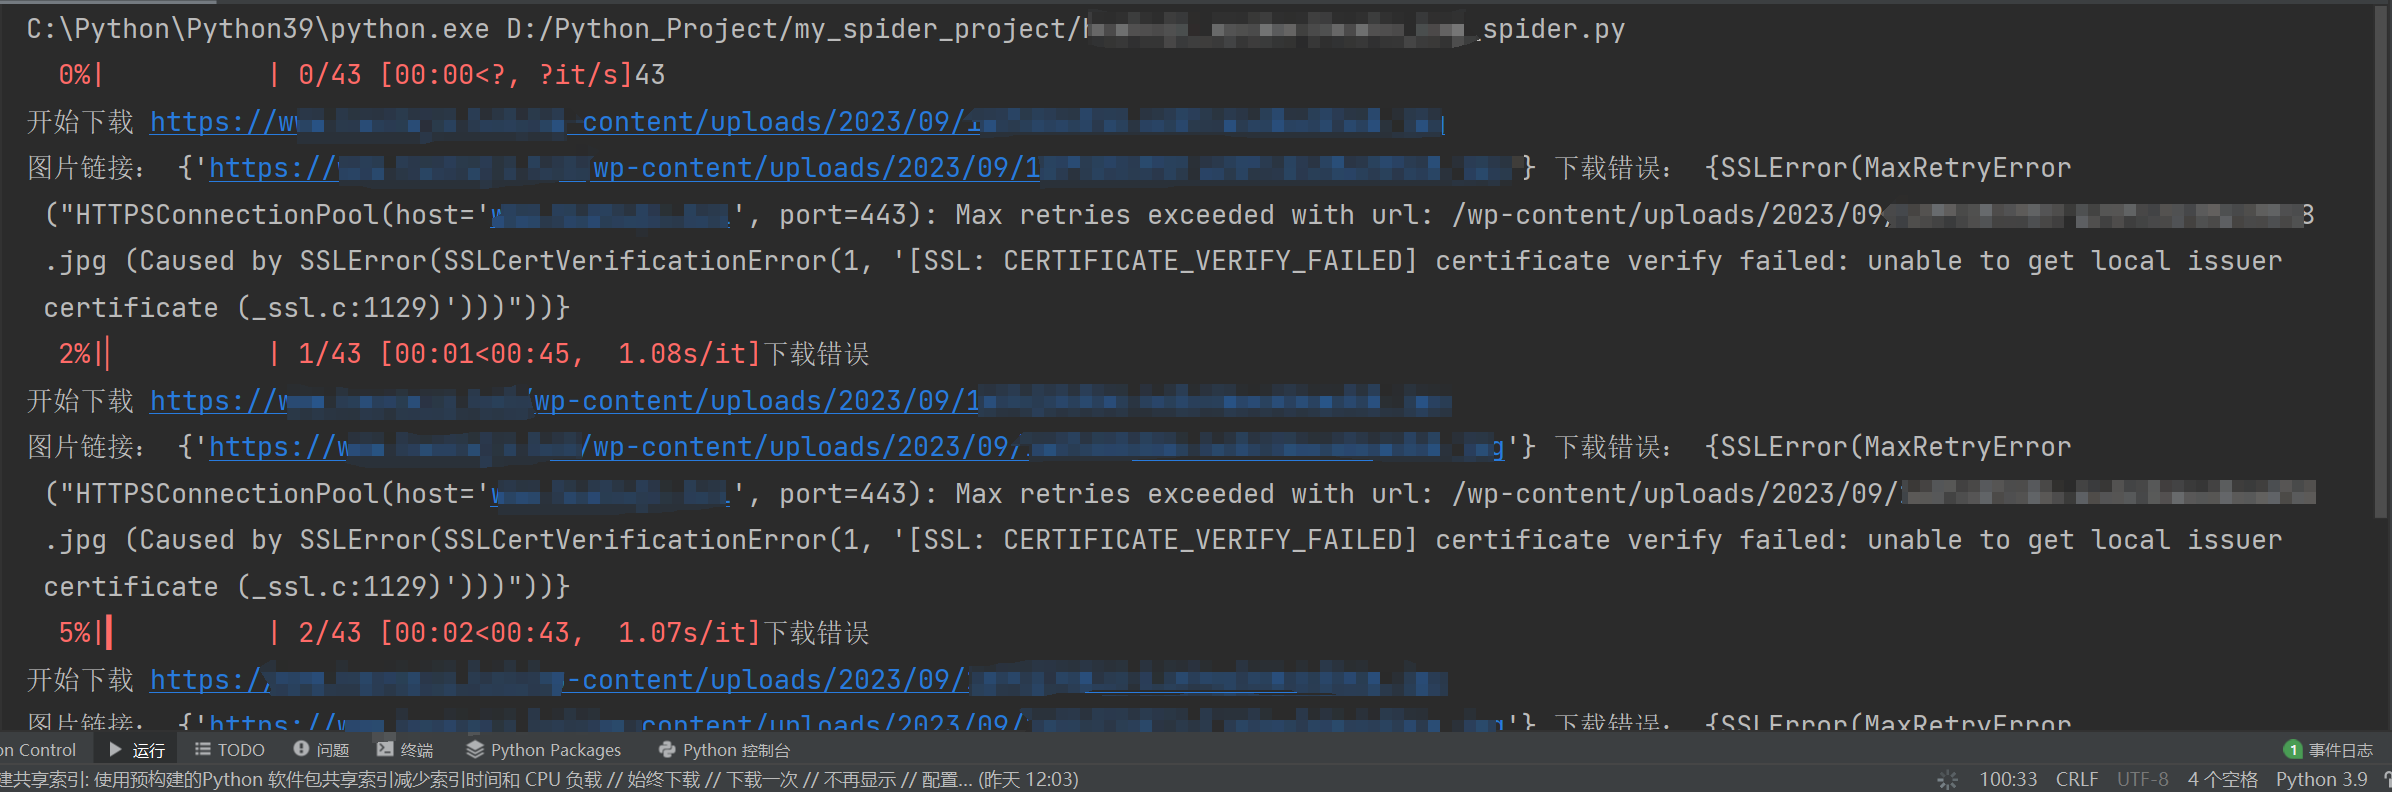 Max retries exceeded with url: https://******... (Caused by SSLError(SSLCertVerificationError(1, '[SSL: CERTIFICATE_VERIFY_FAILED] certificate verify failed: unable to get local issuer certificate (_ssl.c:1129)')))"))}Python requests 异常